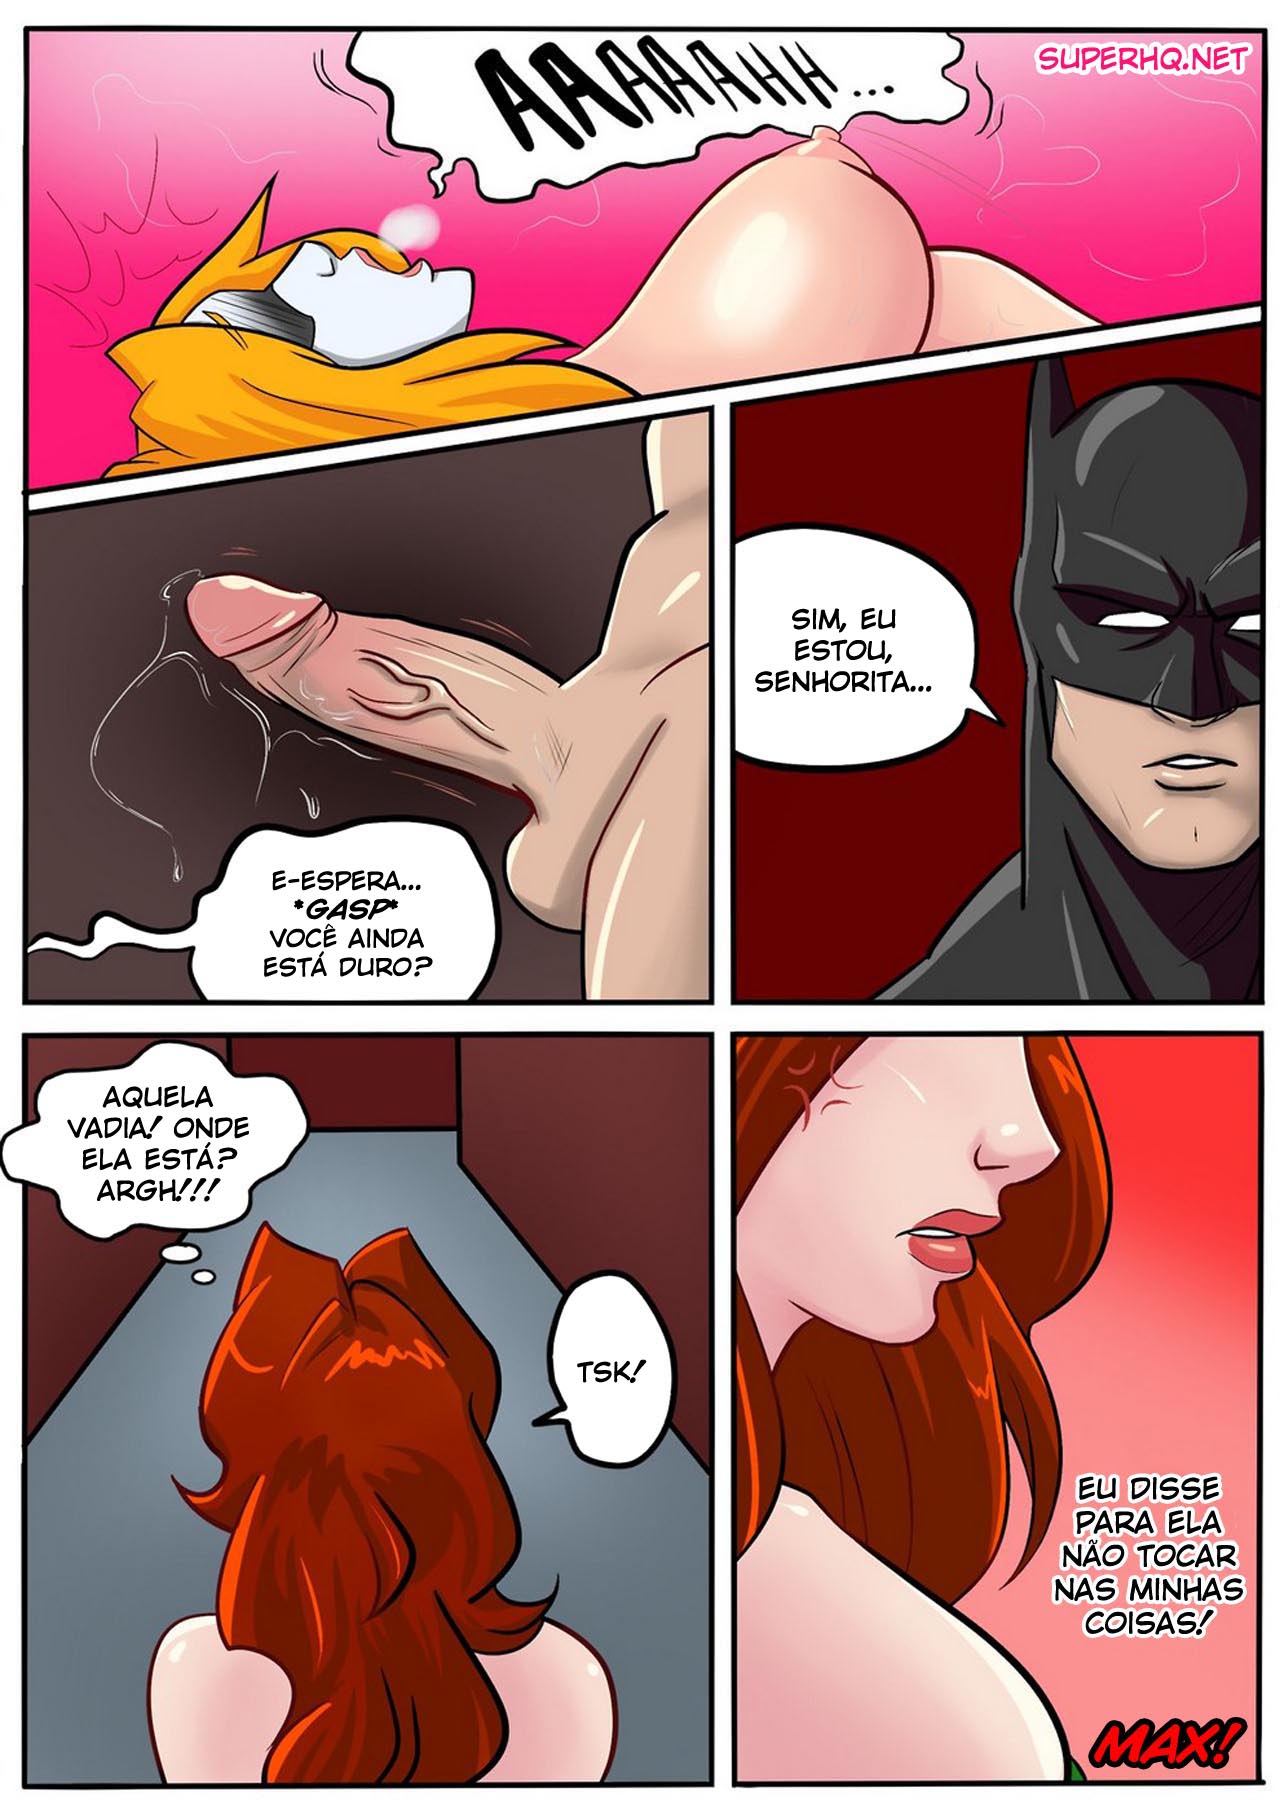 Batman Max Porn - The Sexy Jokeâ€“ Batman vs Harley Quinn | RevistaseQuadrinhos ...